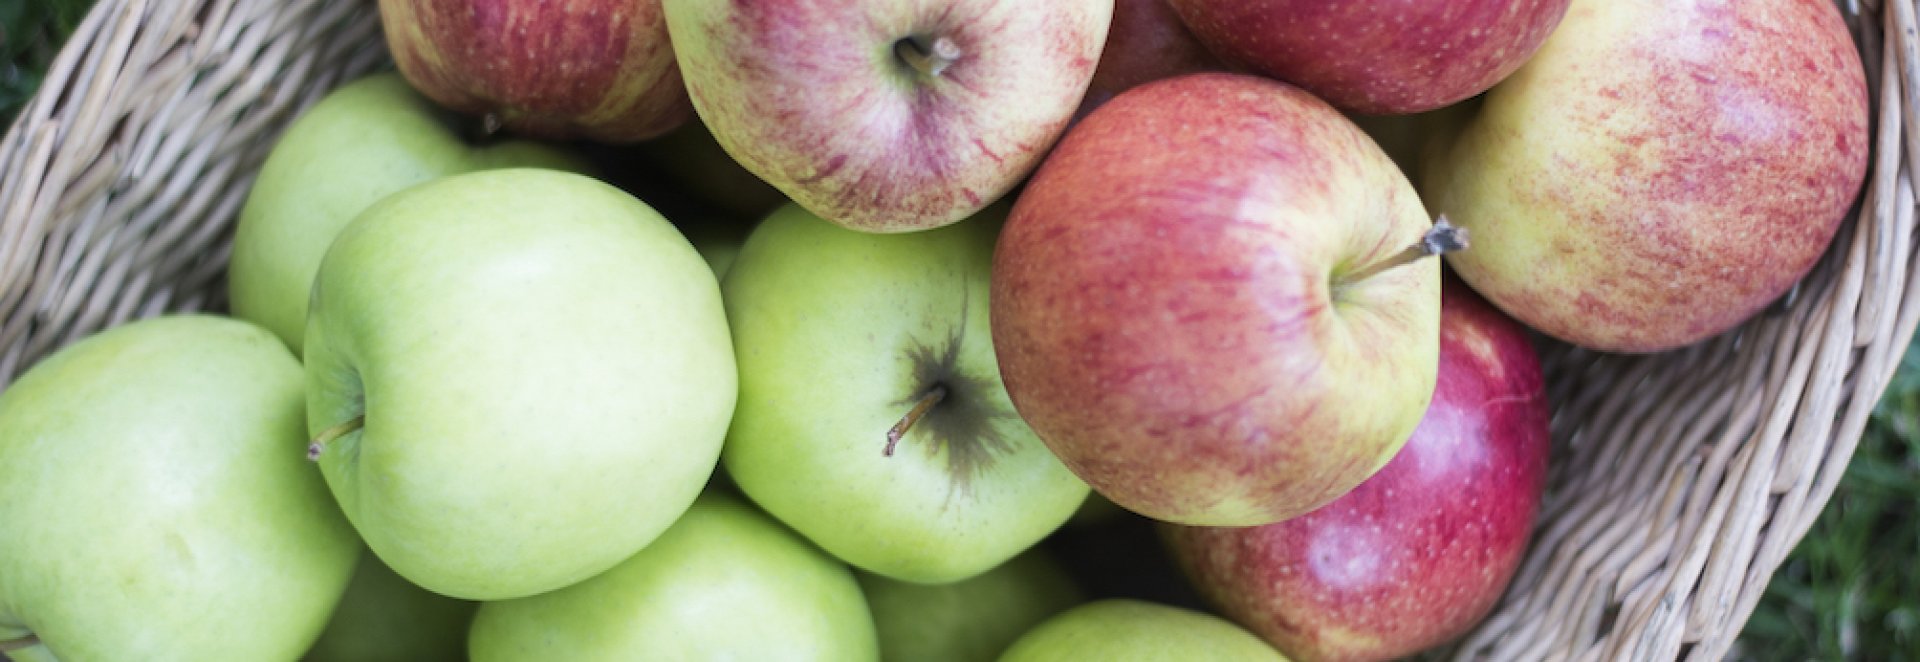 Jablka a jejich přínos pro náš organismus